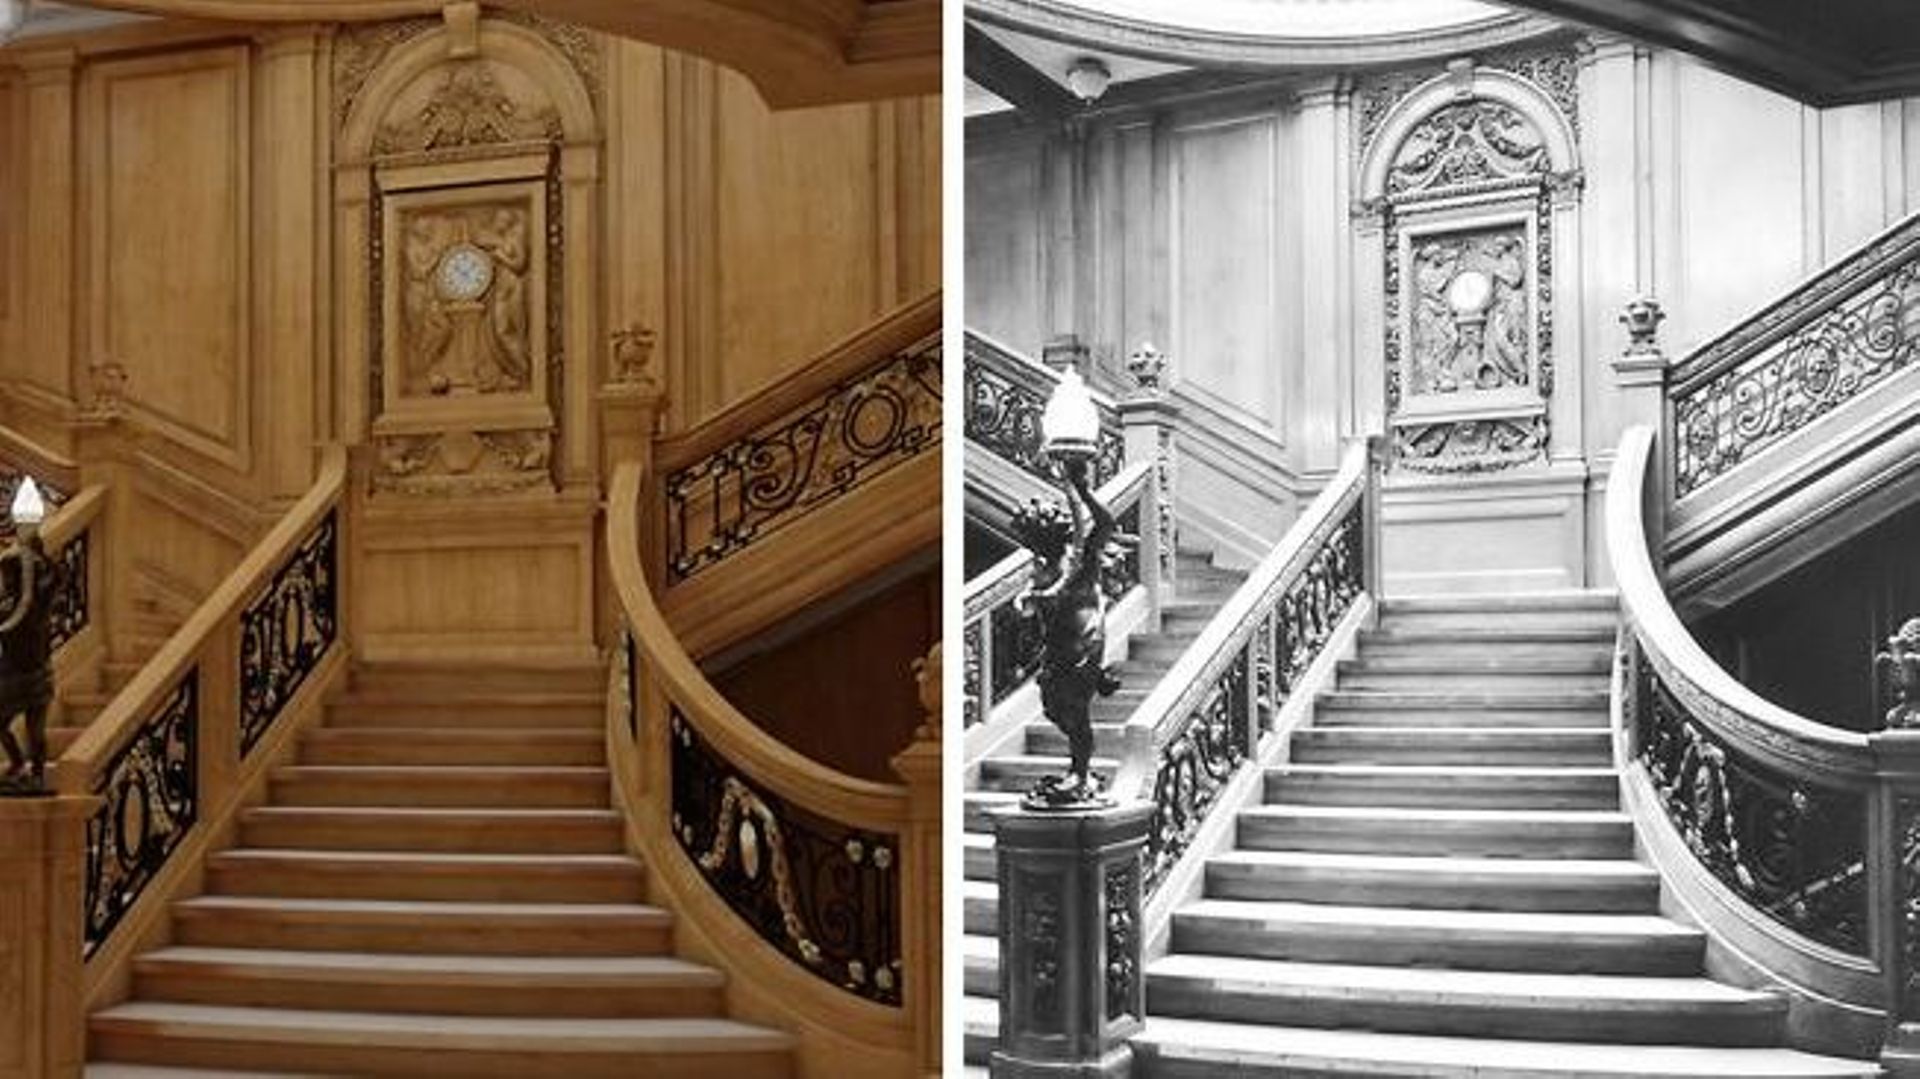 Le grand escalier original et celui du Titanic II.